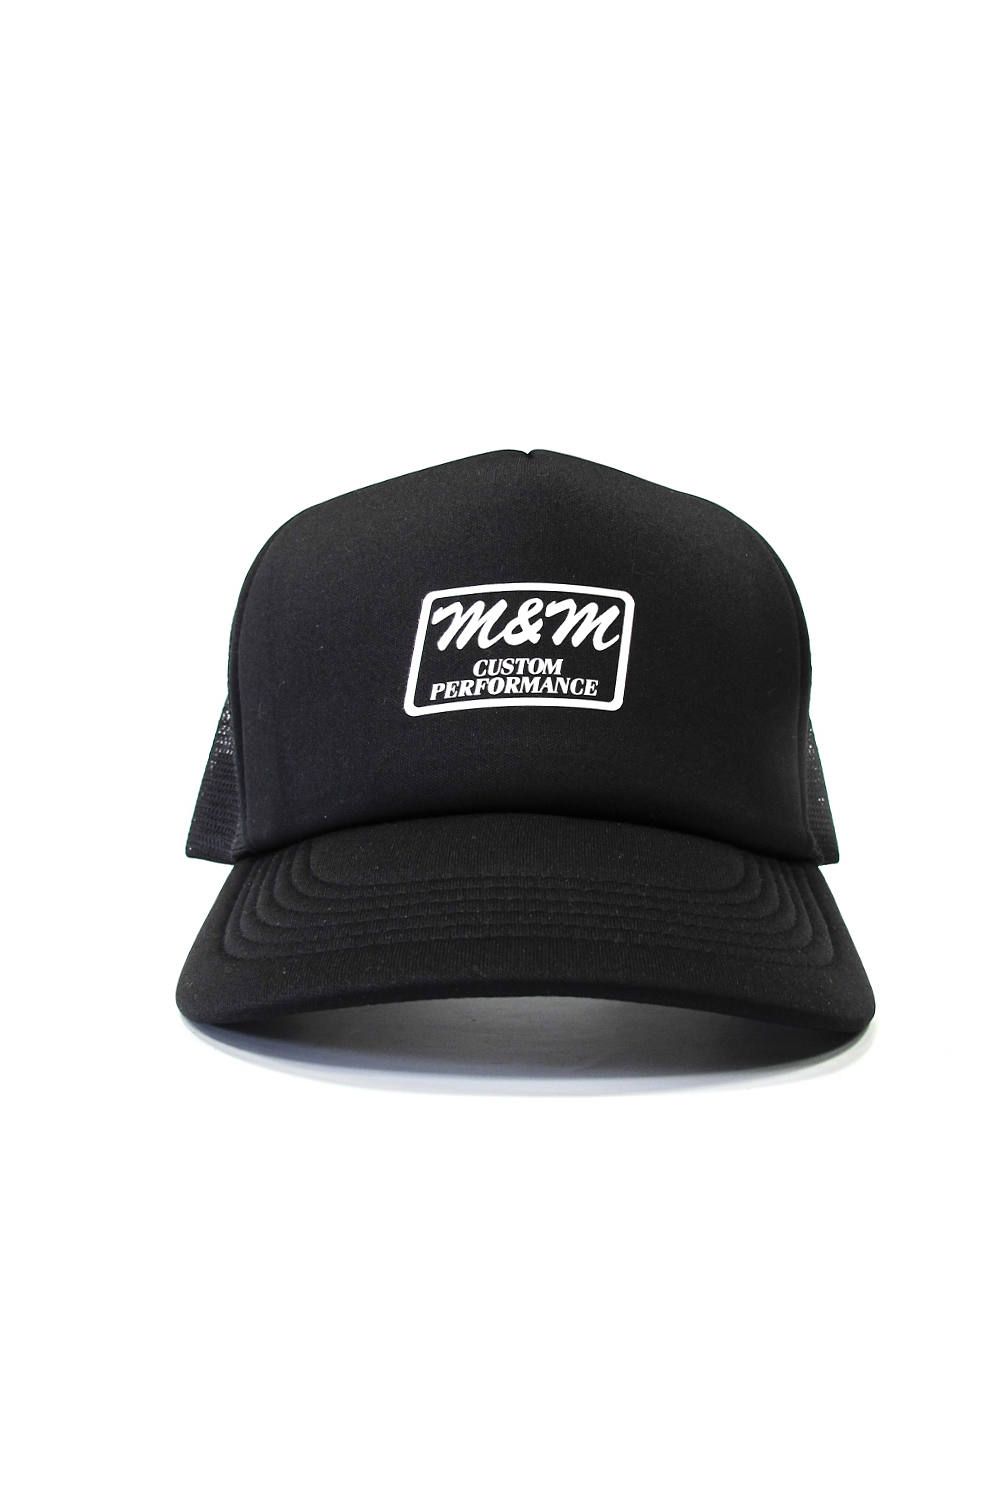 PRINT MESH CAP (BLACK) / プリントメッシュキャップ - フリーサイズ